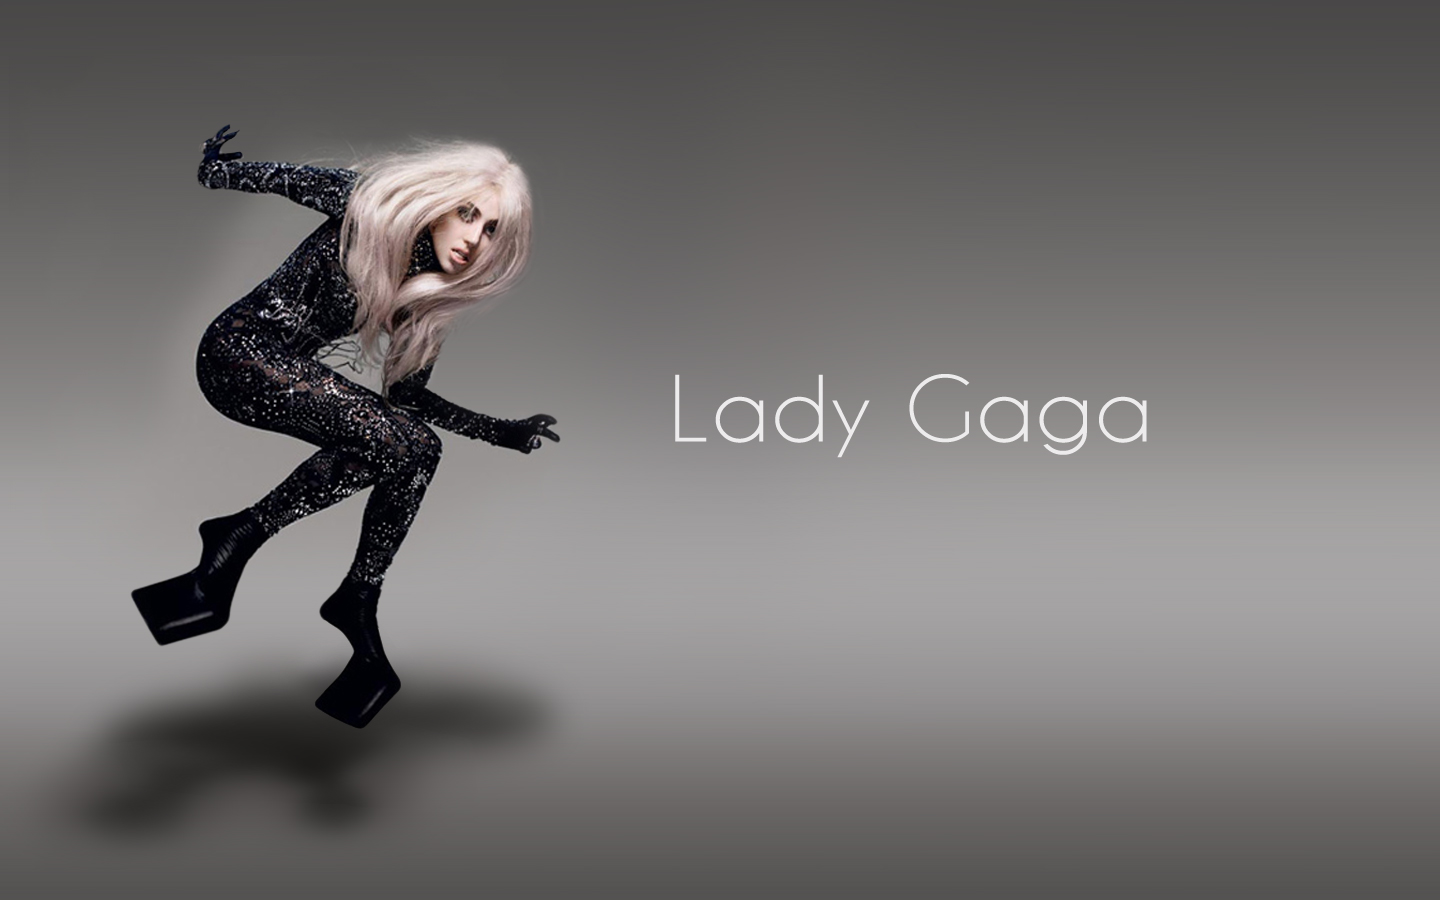 レディ ガガの壁紙 デスクトップ ピクチュアー です Lady Gaga S Desktopwallpaper For Lil Monsters Per